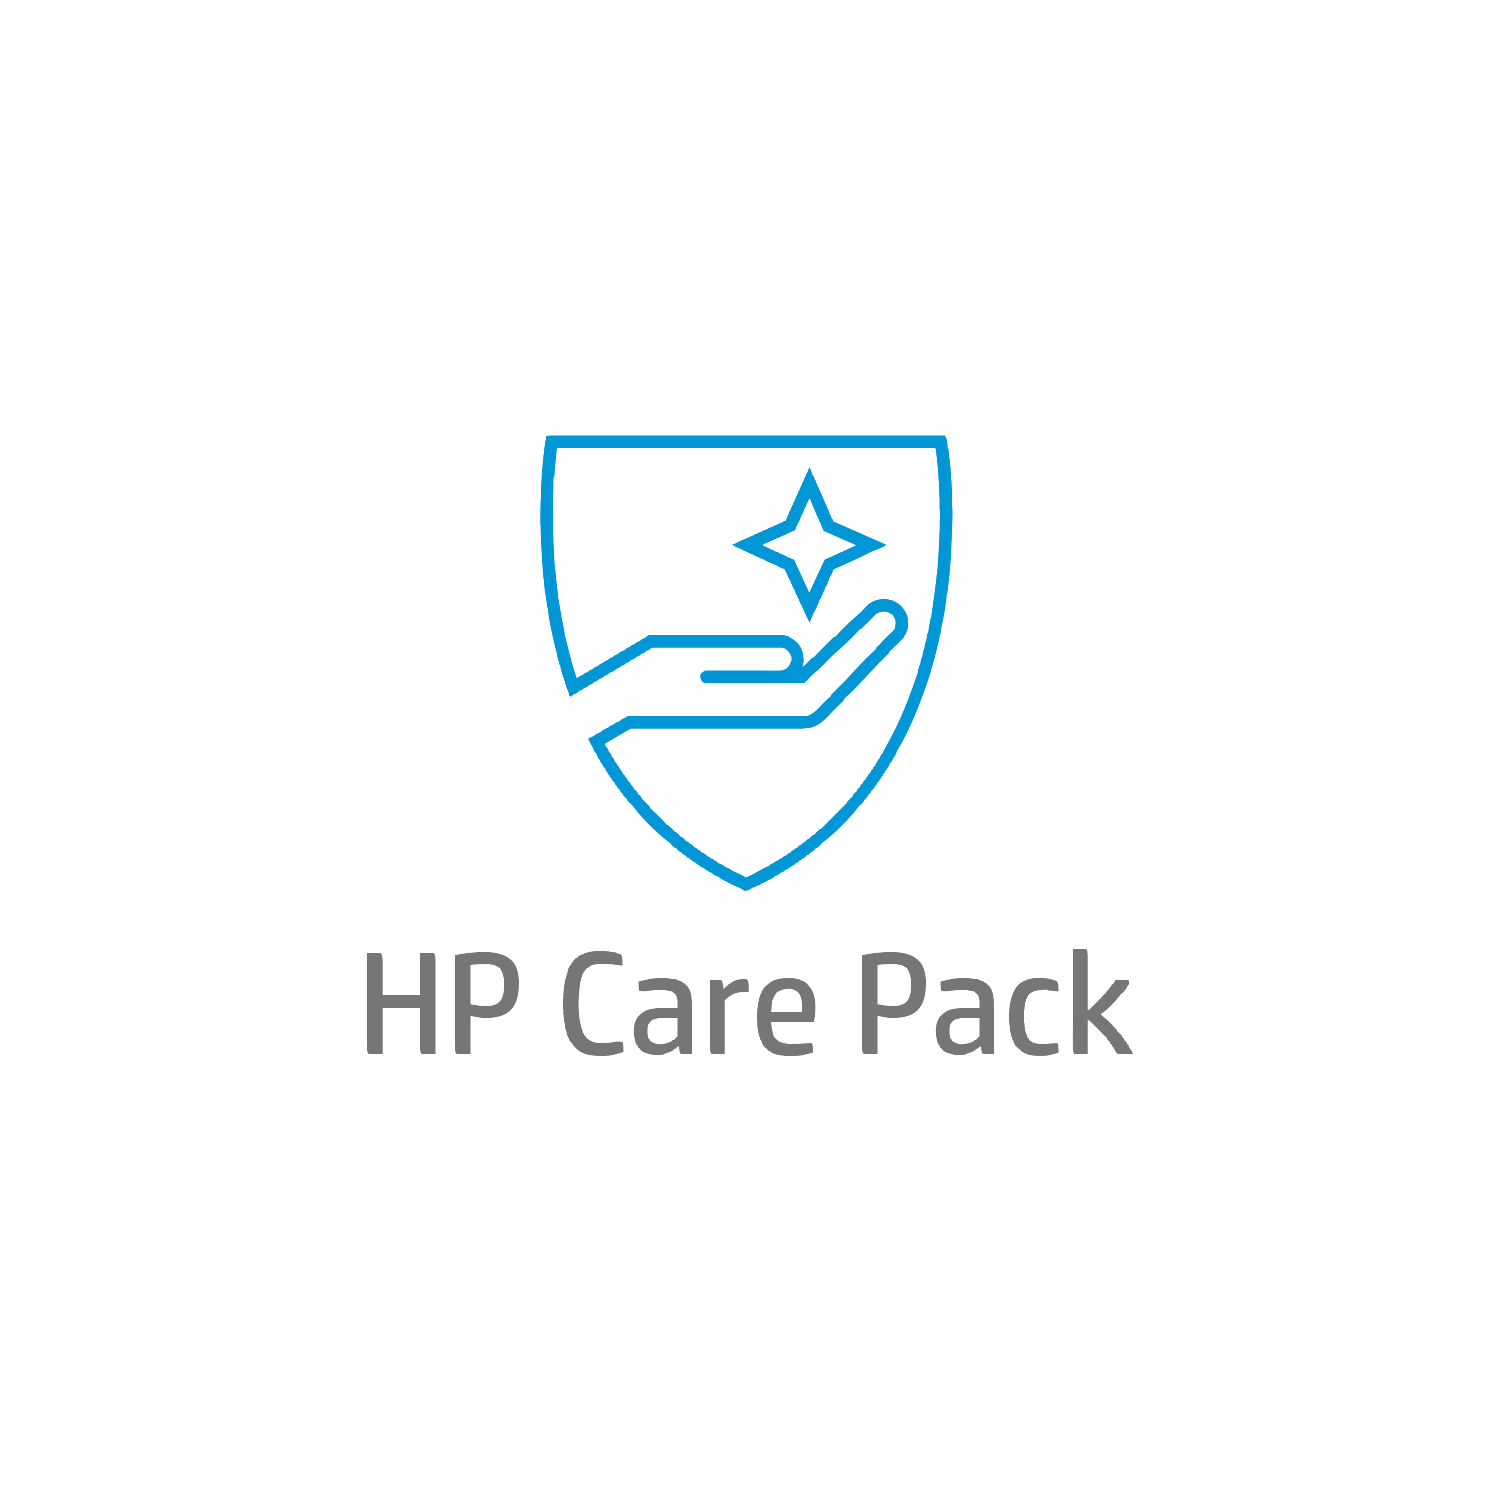 Bild von HP 5 Jahre Active Care Hardware-Support vor Ort mit Reaktion bis zum nächsten Werktag und Einbehaltung defekter Medien für Notebooks - Active Care - Remote und vor Ort - Unter Garantie - Standardarbeitstage - 9 Stunden - 5 Jahre - Reaktion am nächsten Arbeit